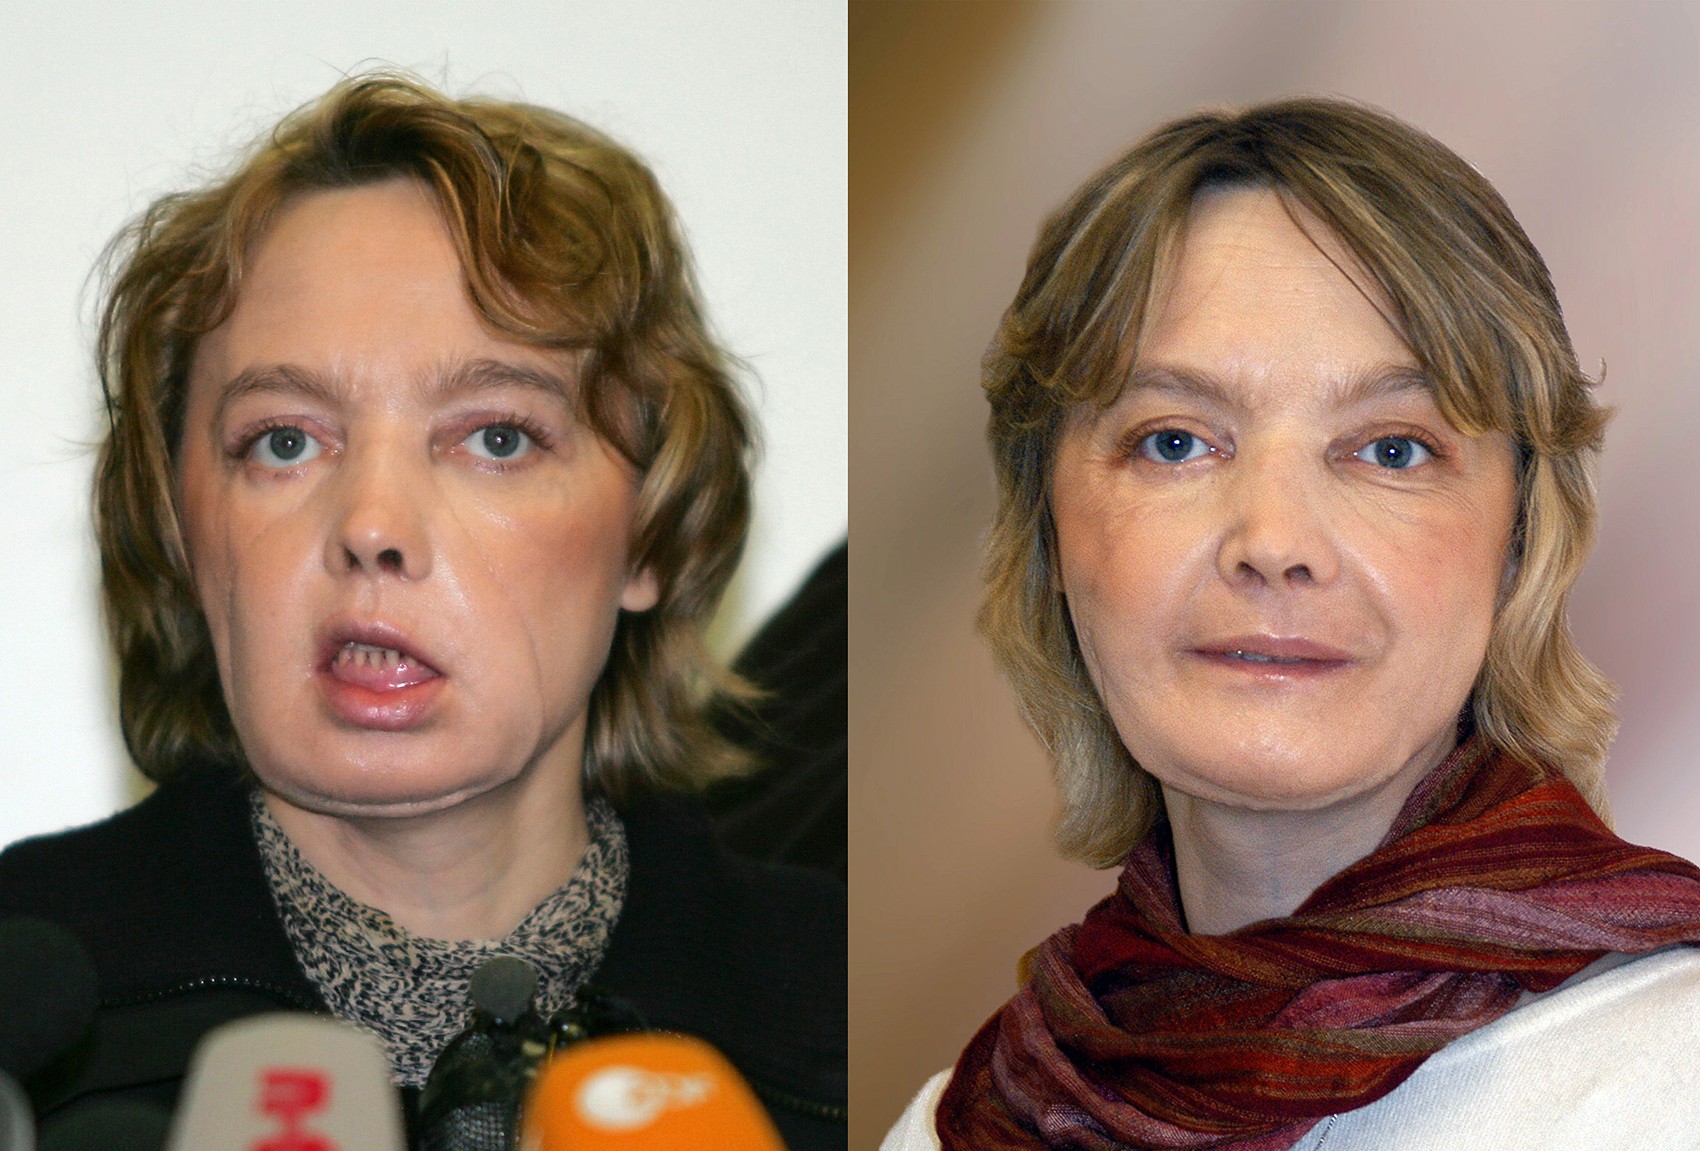  Fotos mostram Isabelle Dinoire em fevereiro de 2006 (esq.) e em novembro de 2006 (dir.), alguns meses depois sua cirurgia de transplante de face (Foto: DENIS CHARLET / AFP &amp; CHU AMIENS / AFP)